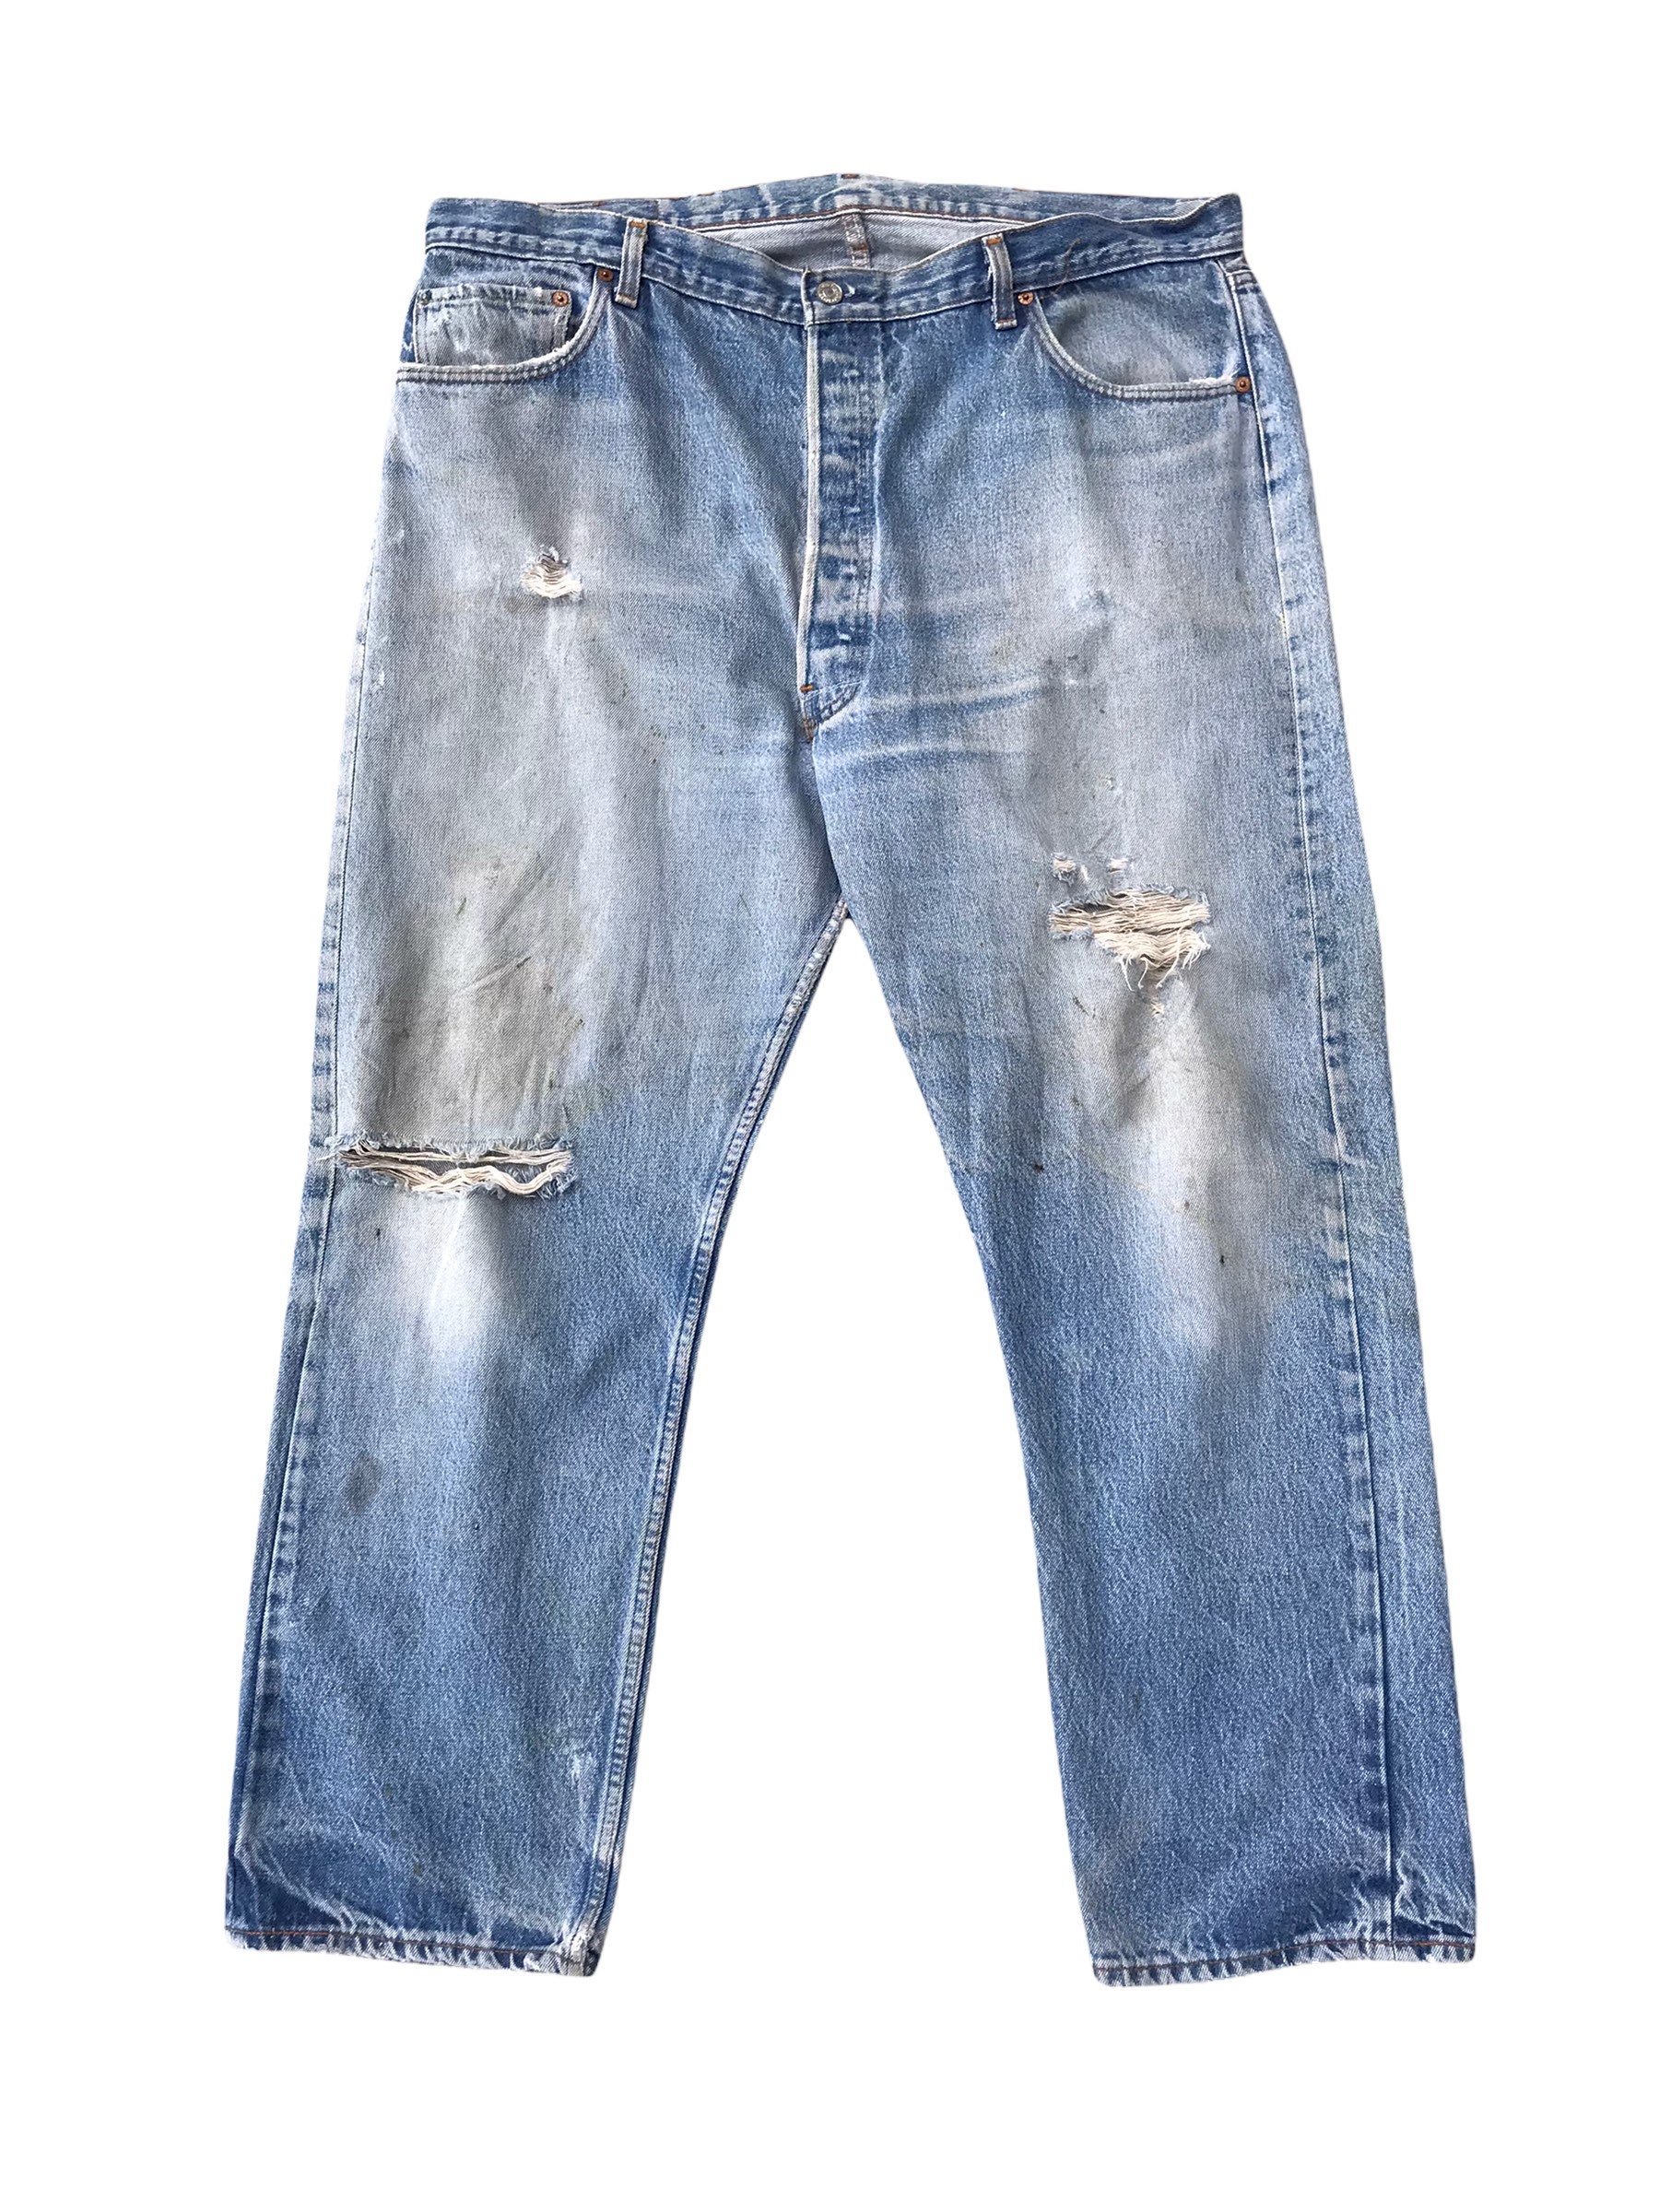 Vintage 80s Levis 501 Non Selvedge Jeans Distressed Denim - Etsy Singapore